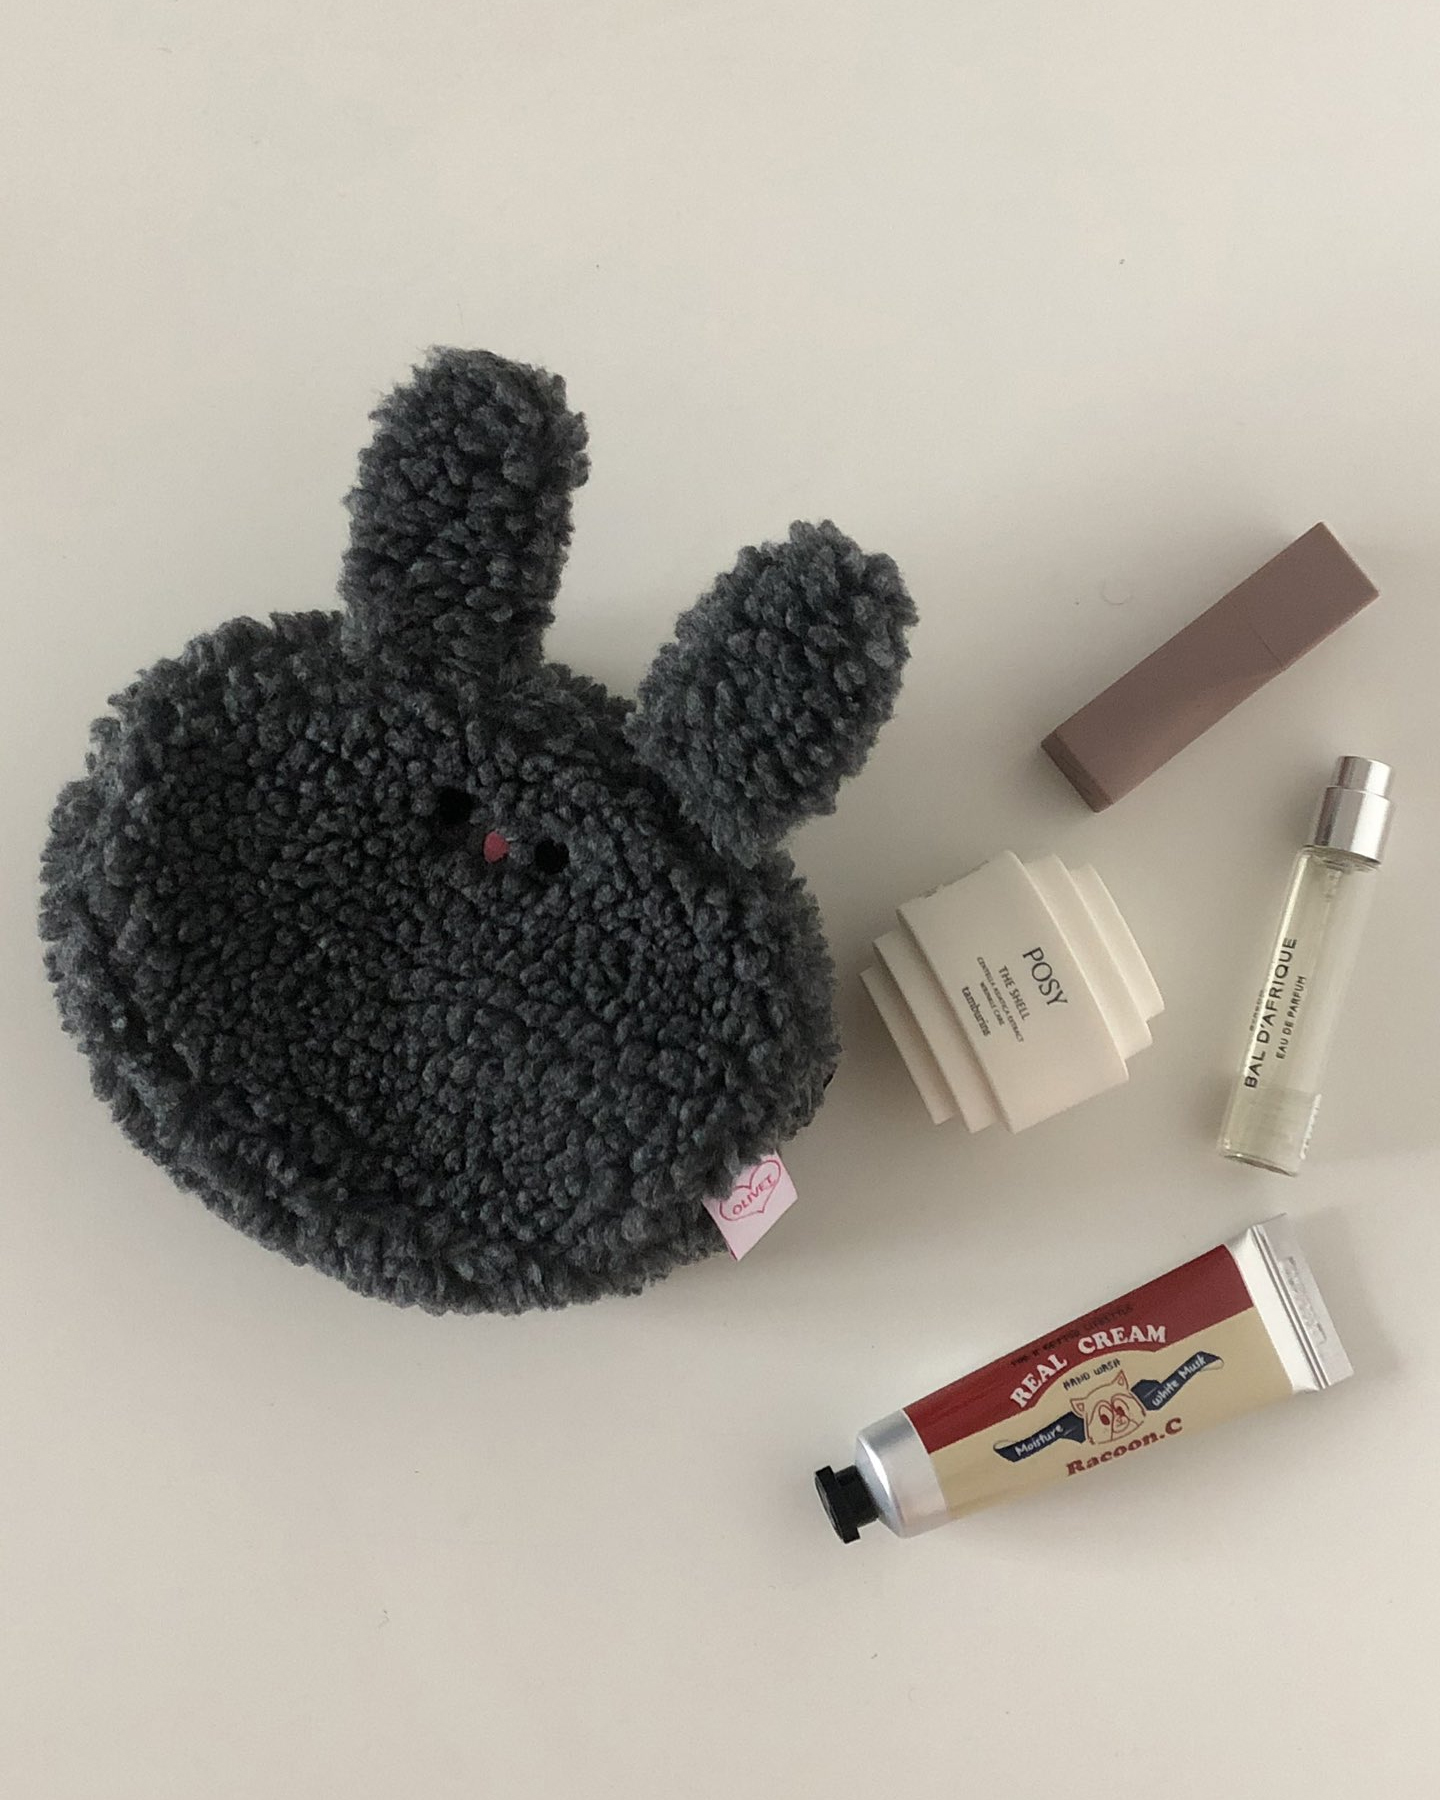 Olivet rabbit pouch